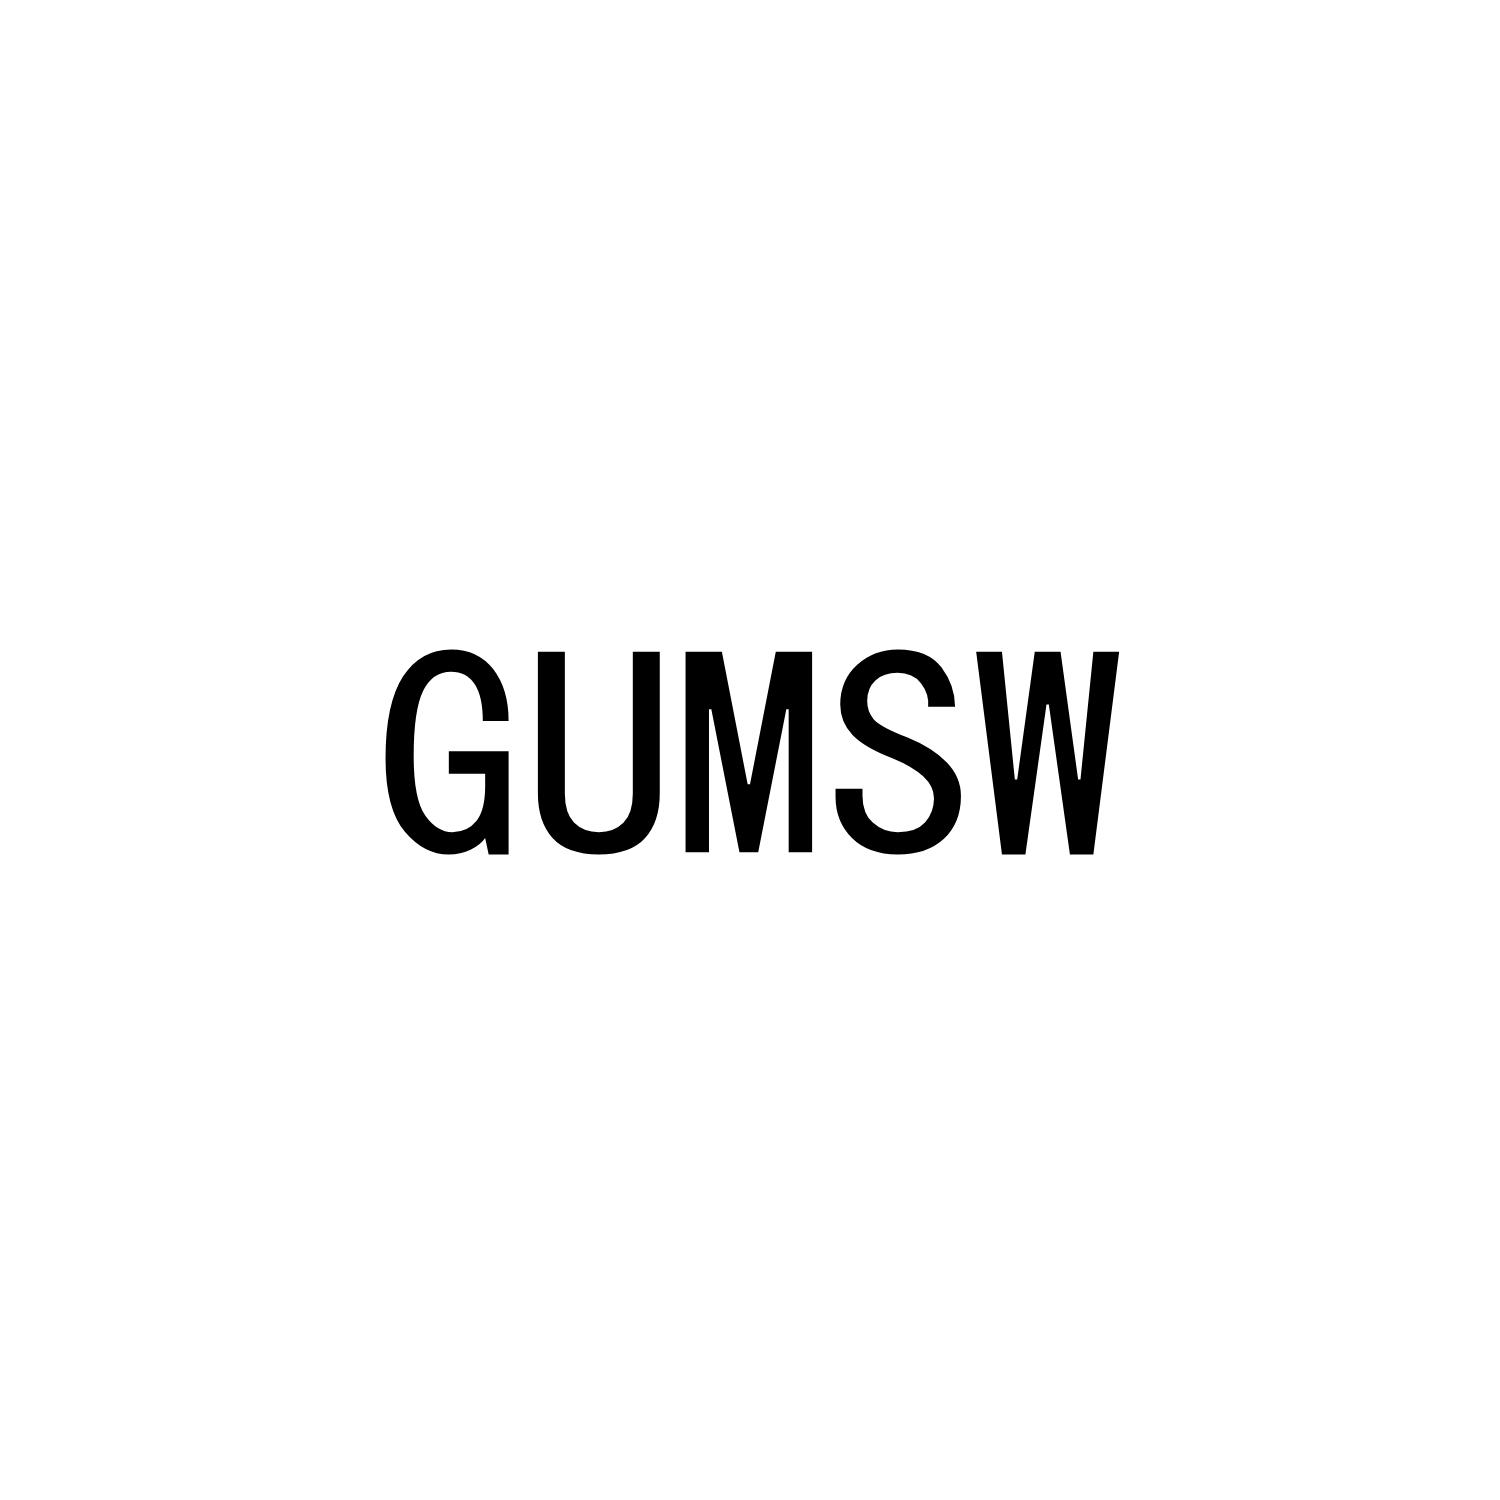 GUMSW